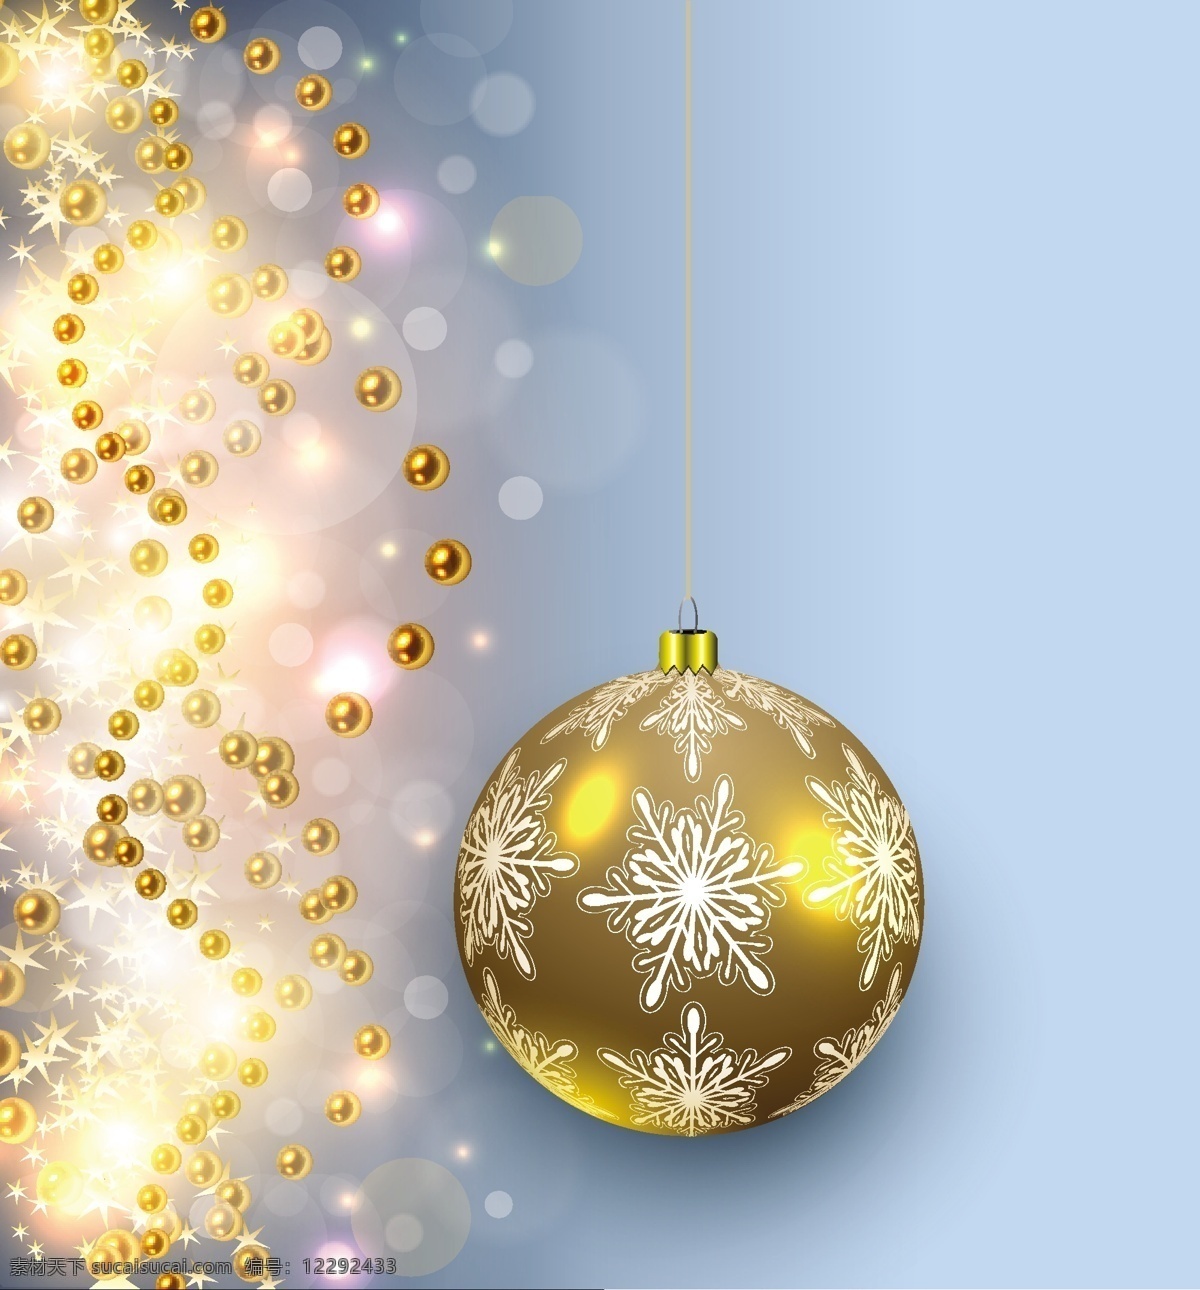 圣诞节 彩球 矢量 金色 雪花 矢量素材 设计素材